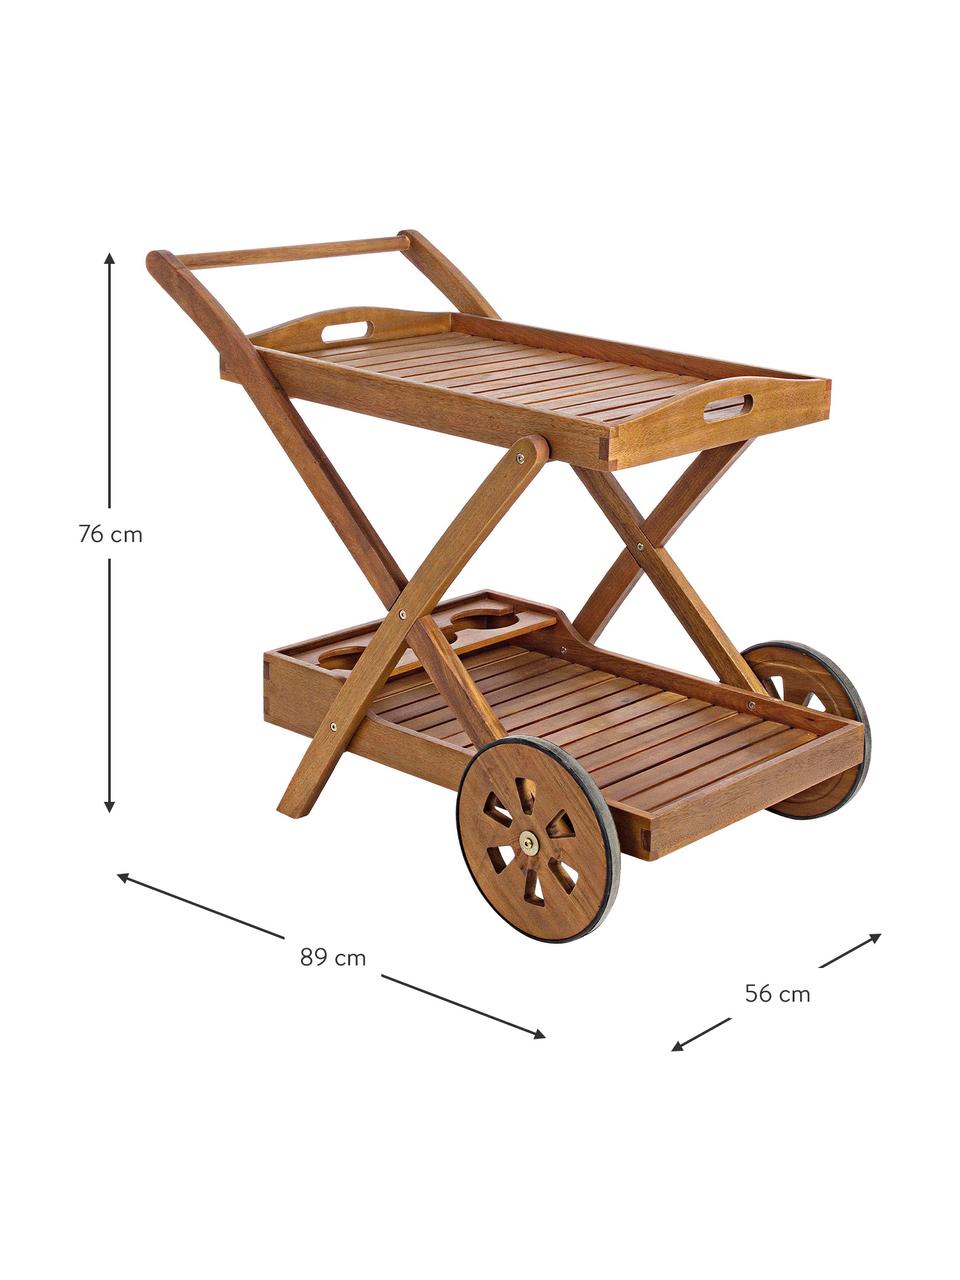 Ogrodowy wózek barowy Noemi, Drewno akacjowe, lakierowane na jasno i olejowane, Drewno akacjowe, S 89 x W 76 cm